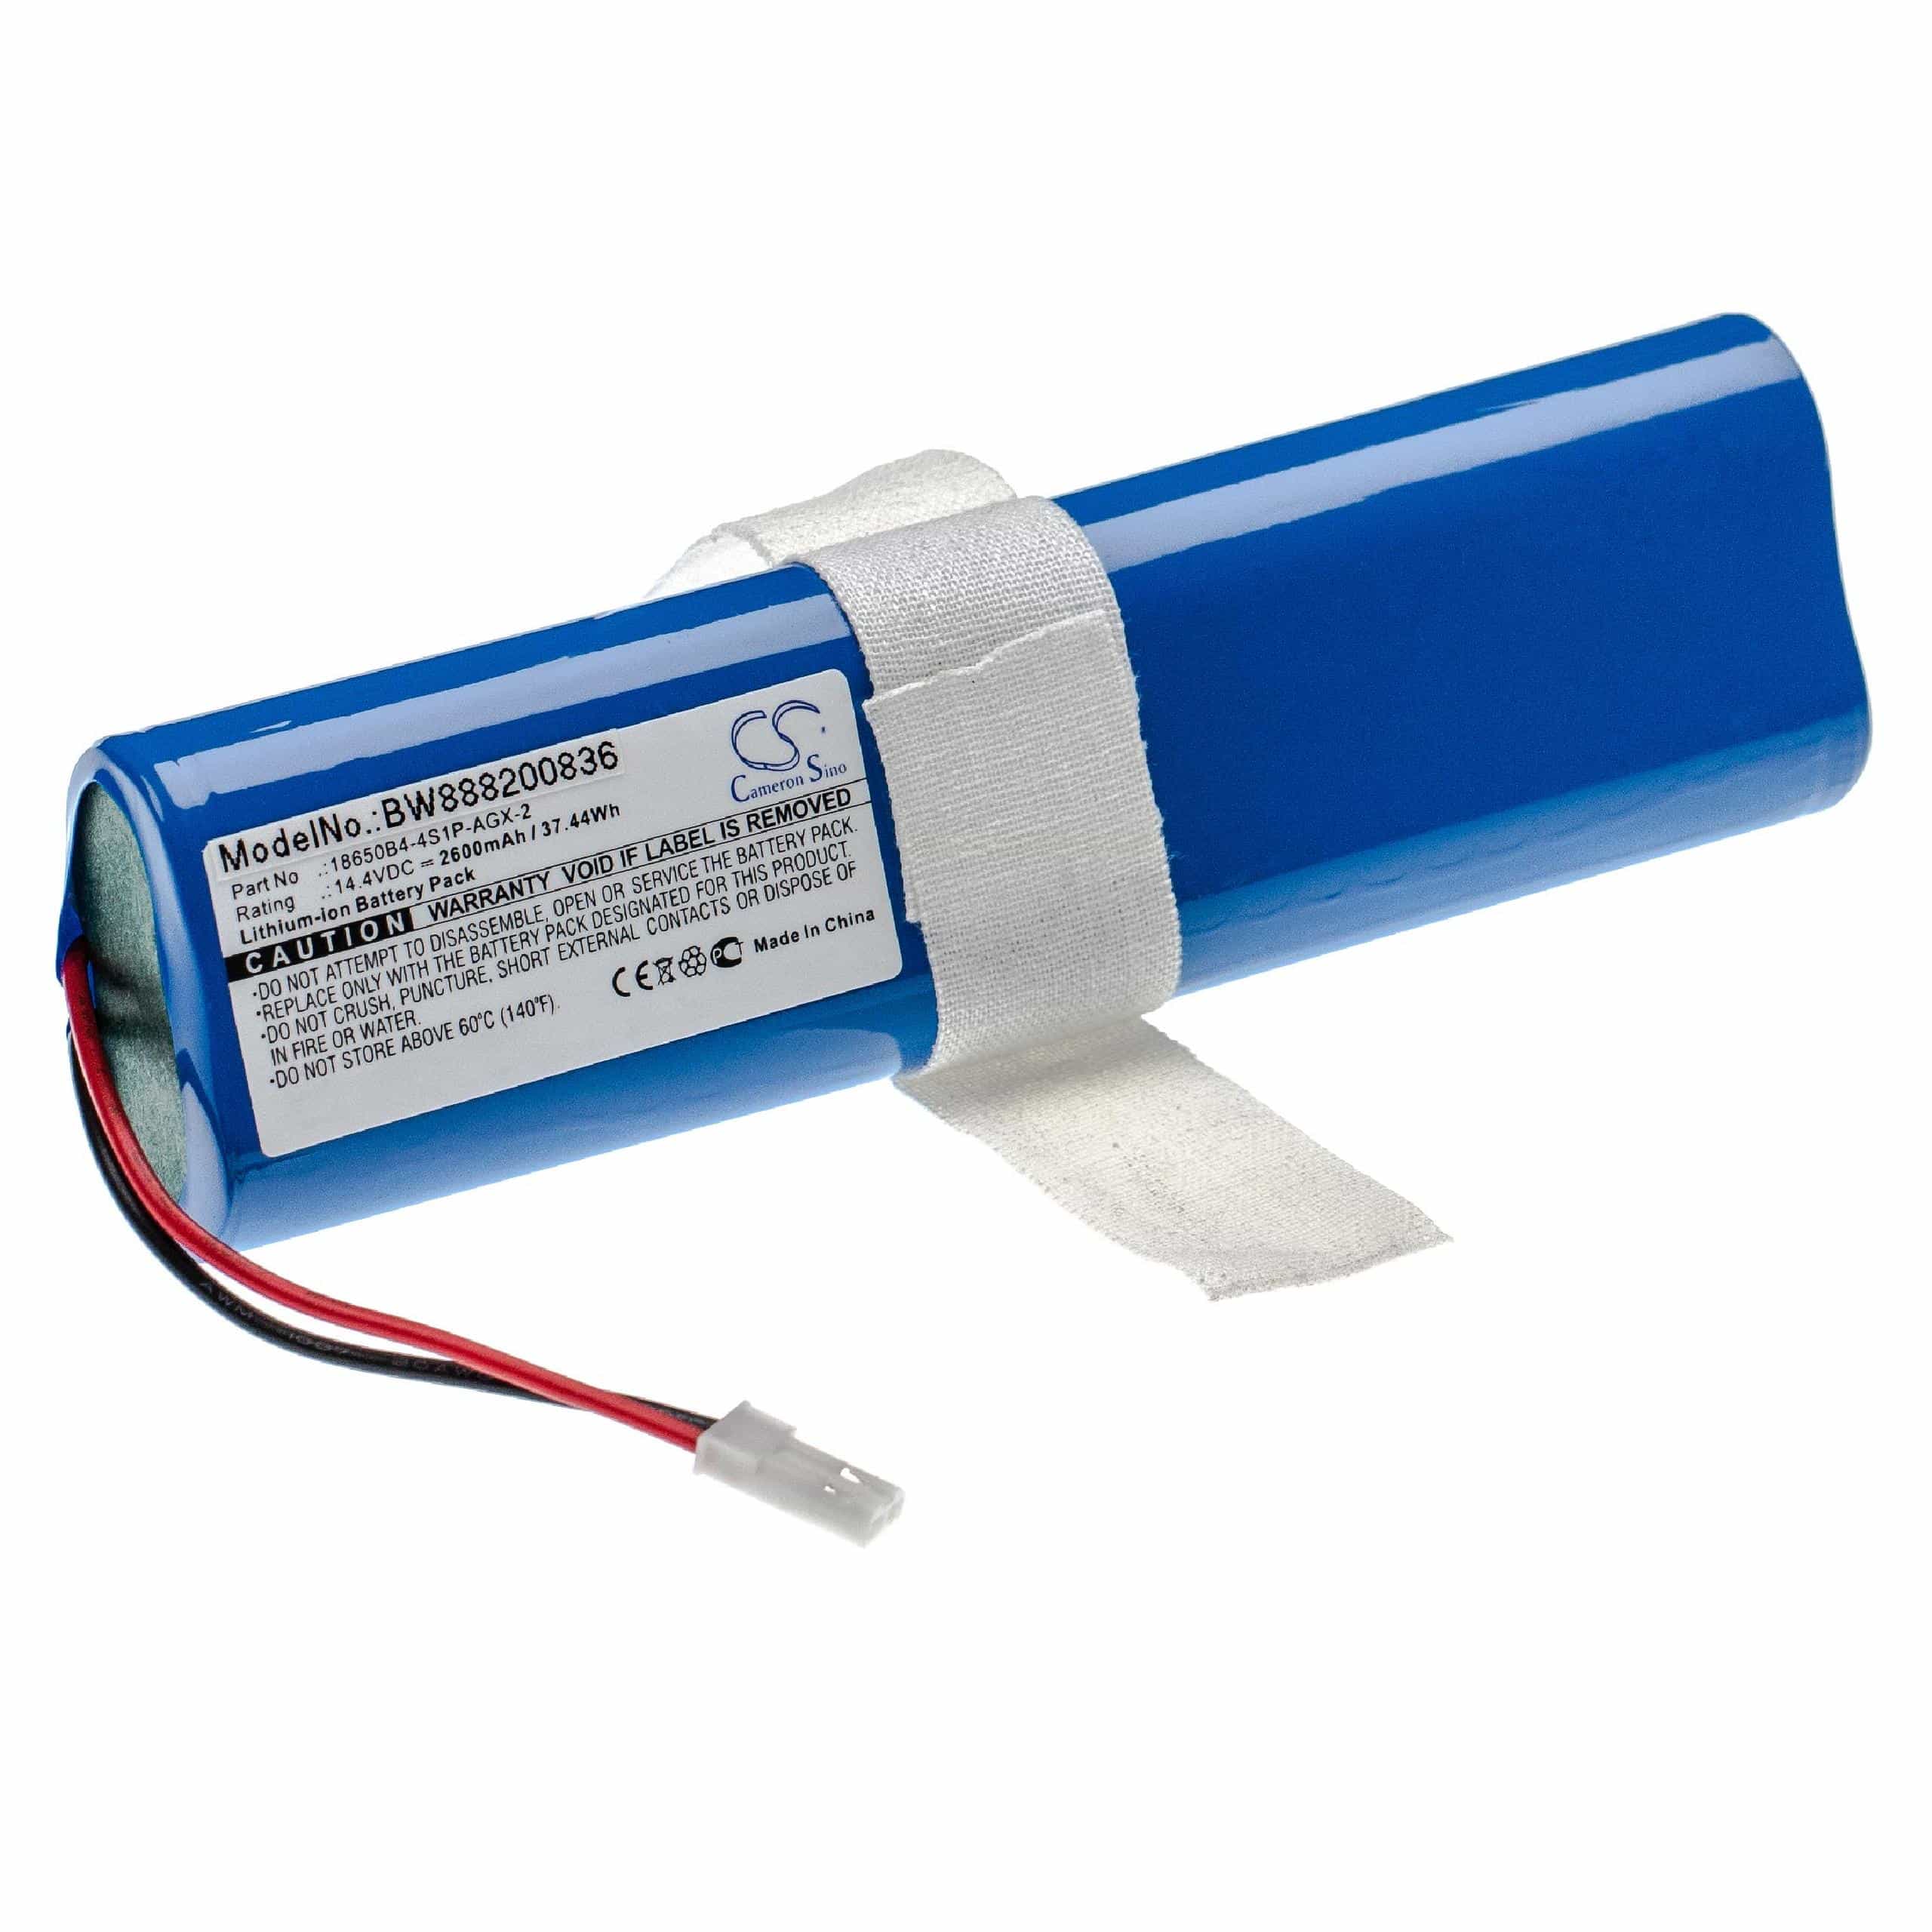 Batterie remplace iLife Ay-18650B4, 18650B4-4S1P-AGX-2 pour robot aspirateur - 2600mAh 14,4V Li-ion